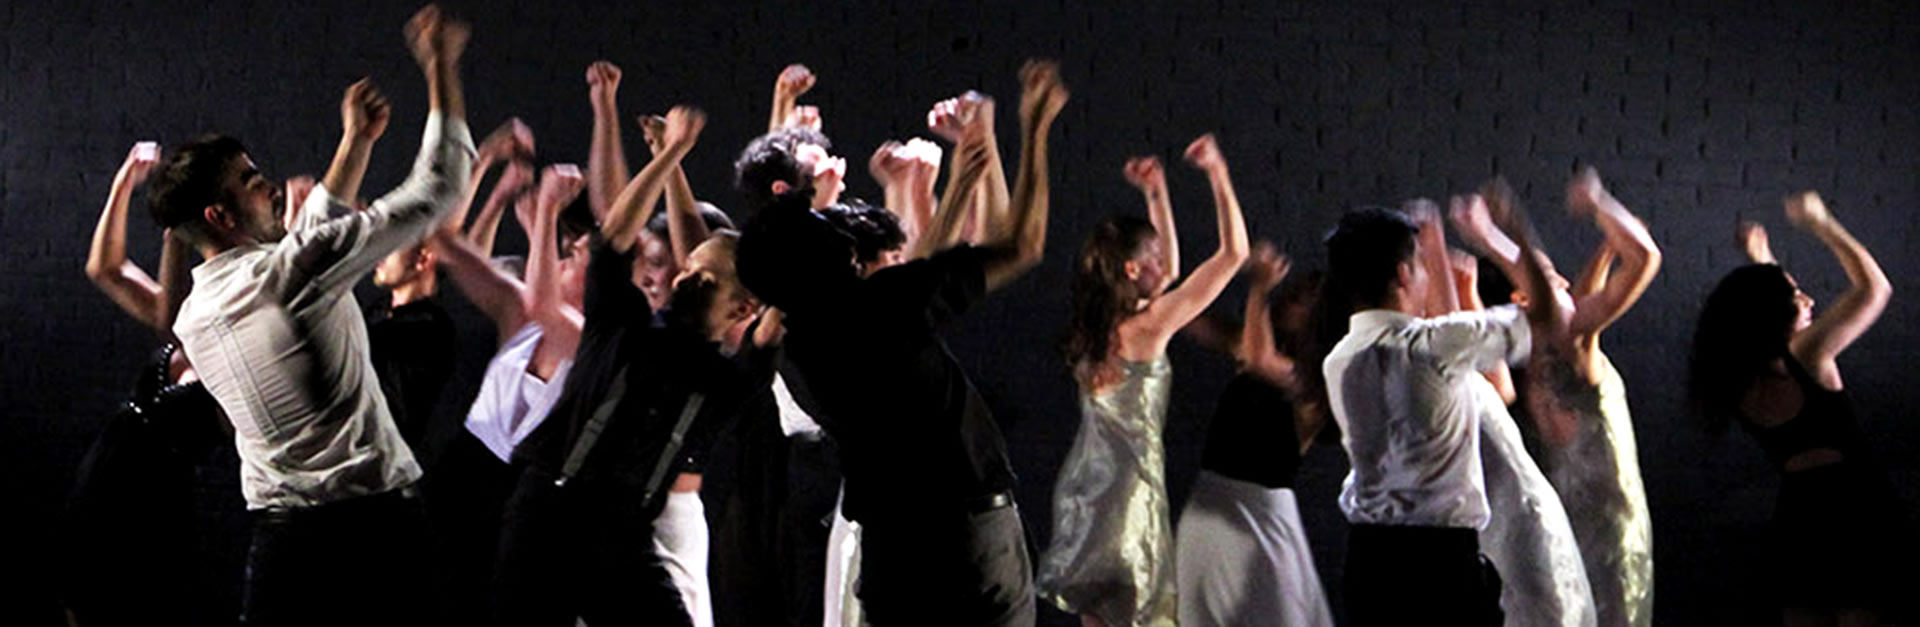 La Compañía de Danza de la UNA en el festival "Vicente López en Escena 2018"